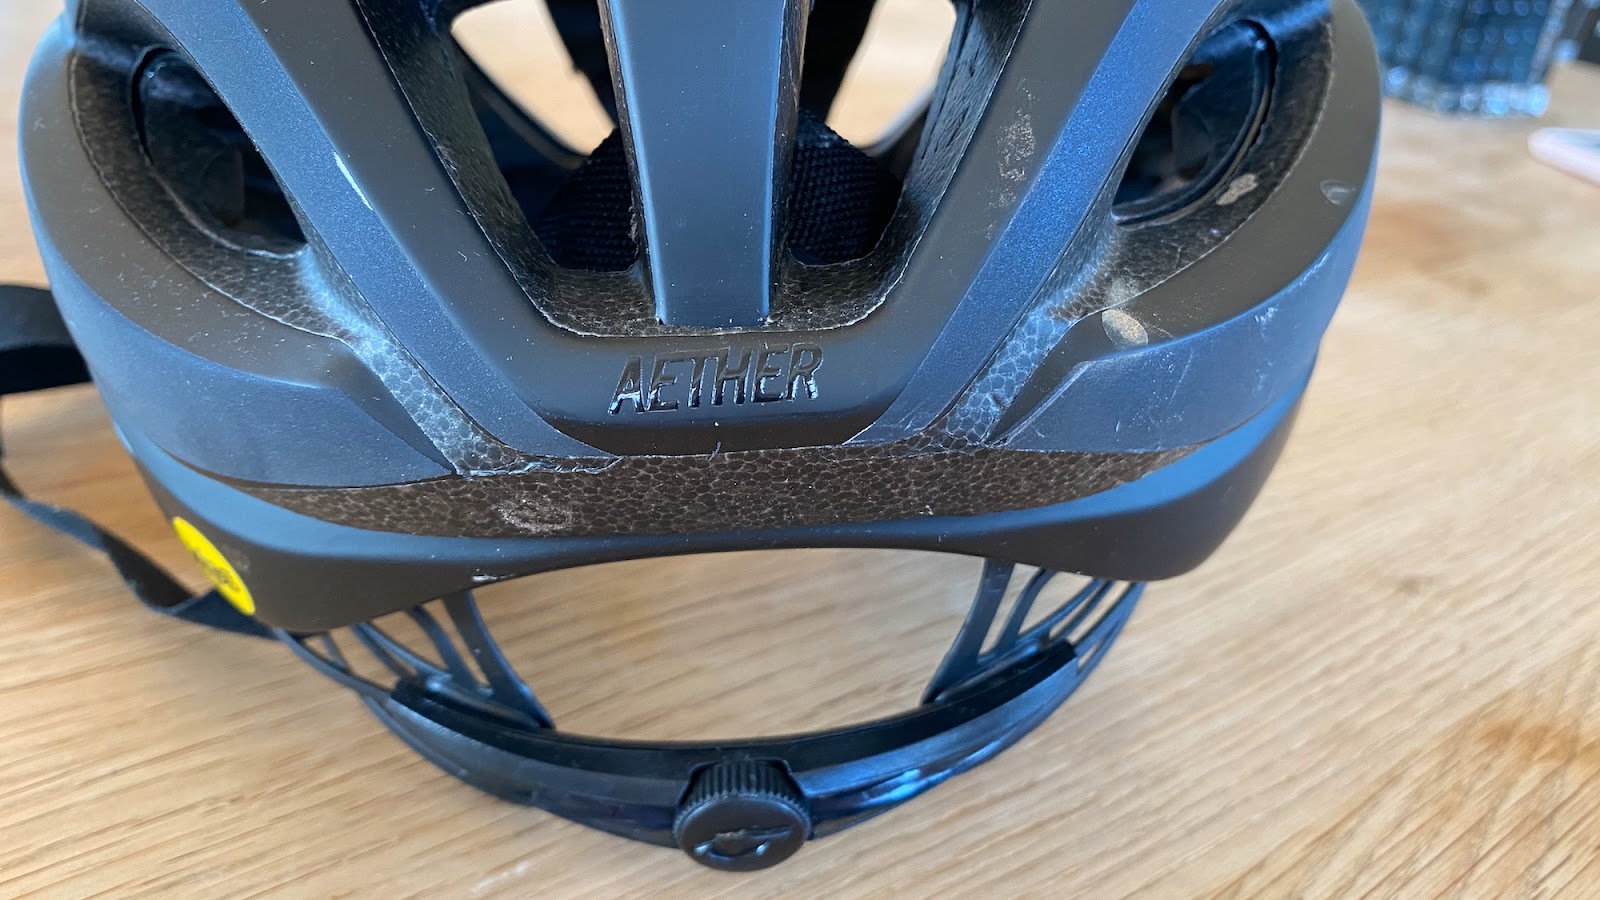 Vi tester Giro Aether Mips hjelm - Sykkelen.no